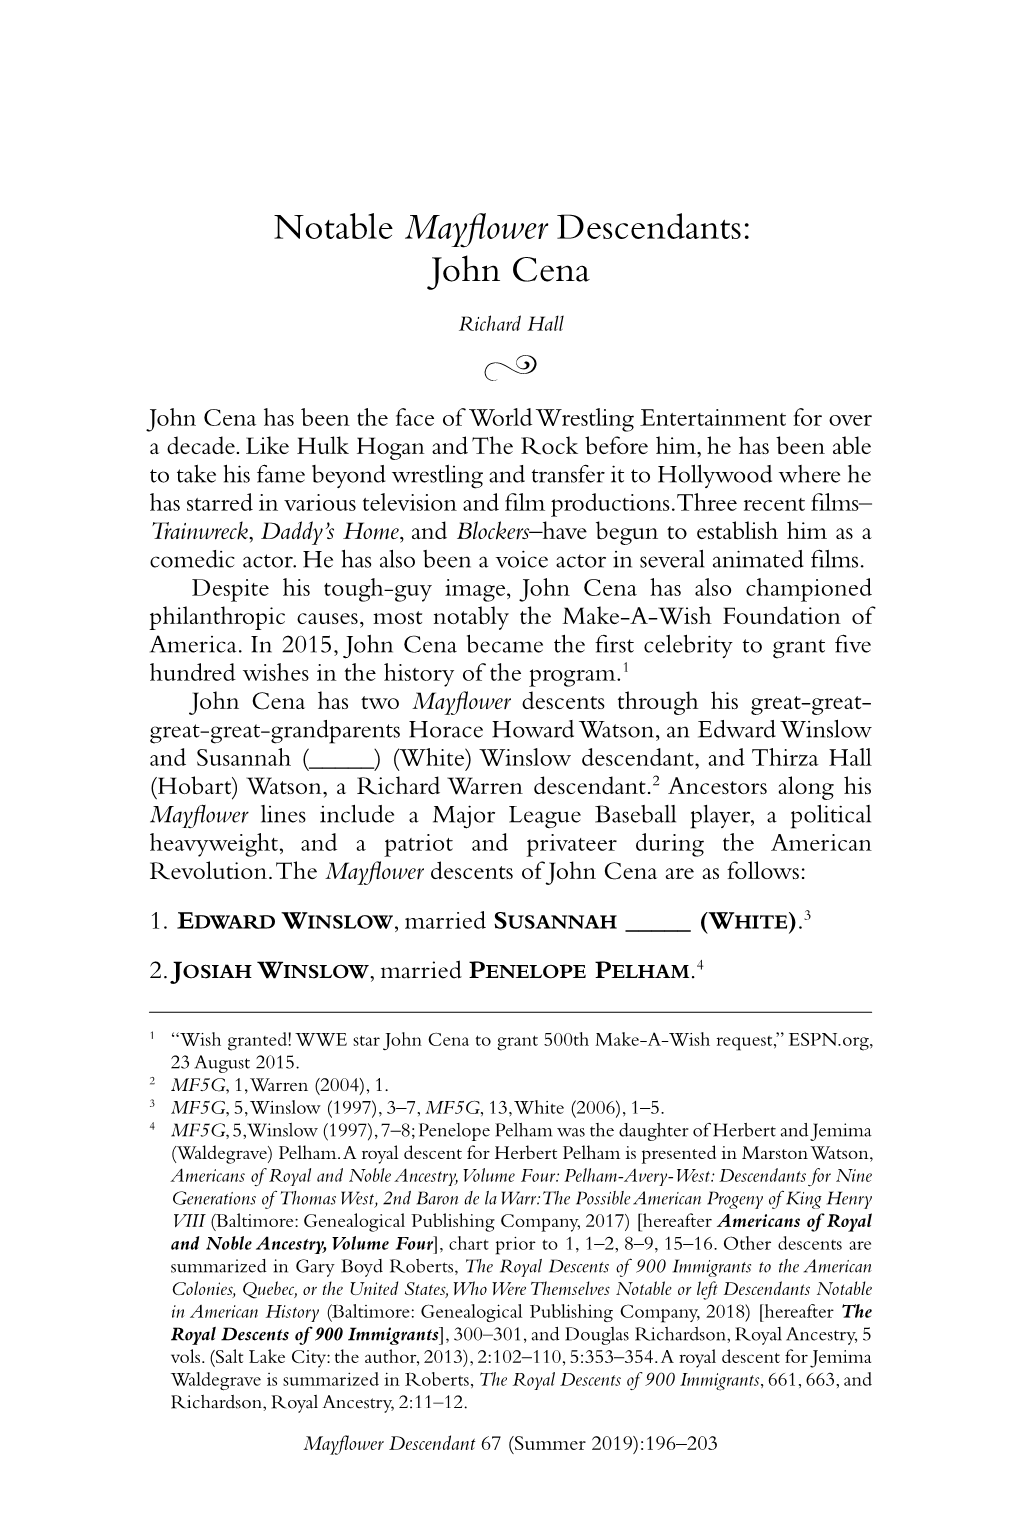 Notable Mayflower Descendants: John Cena